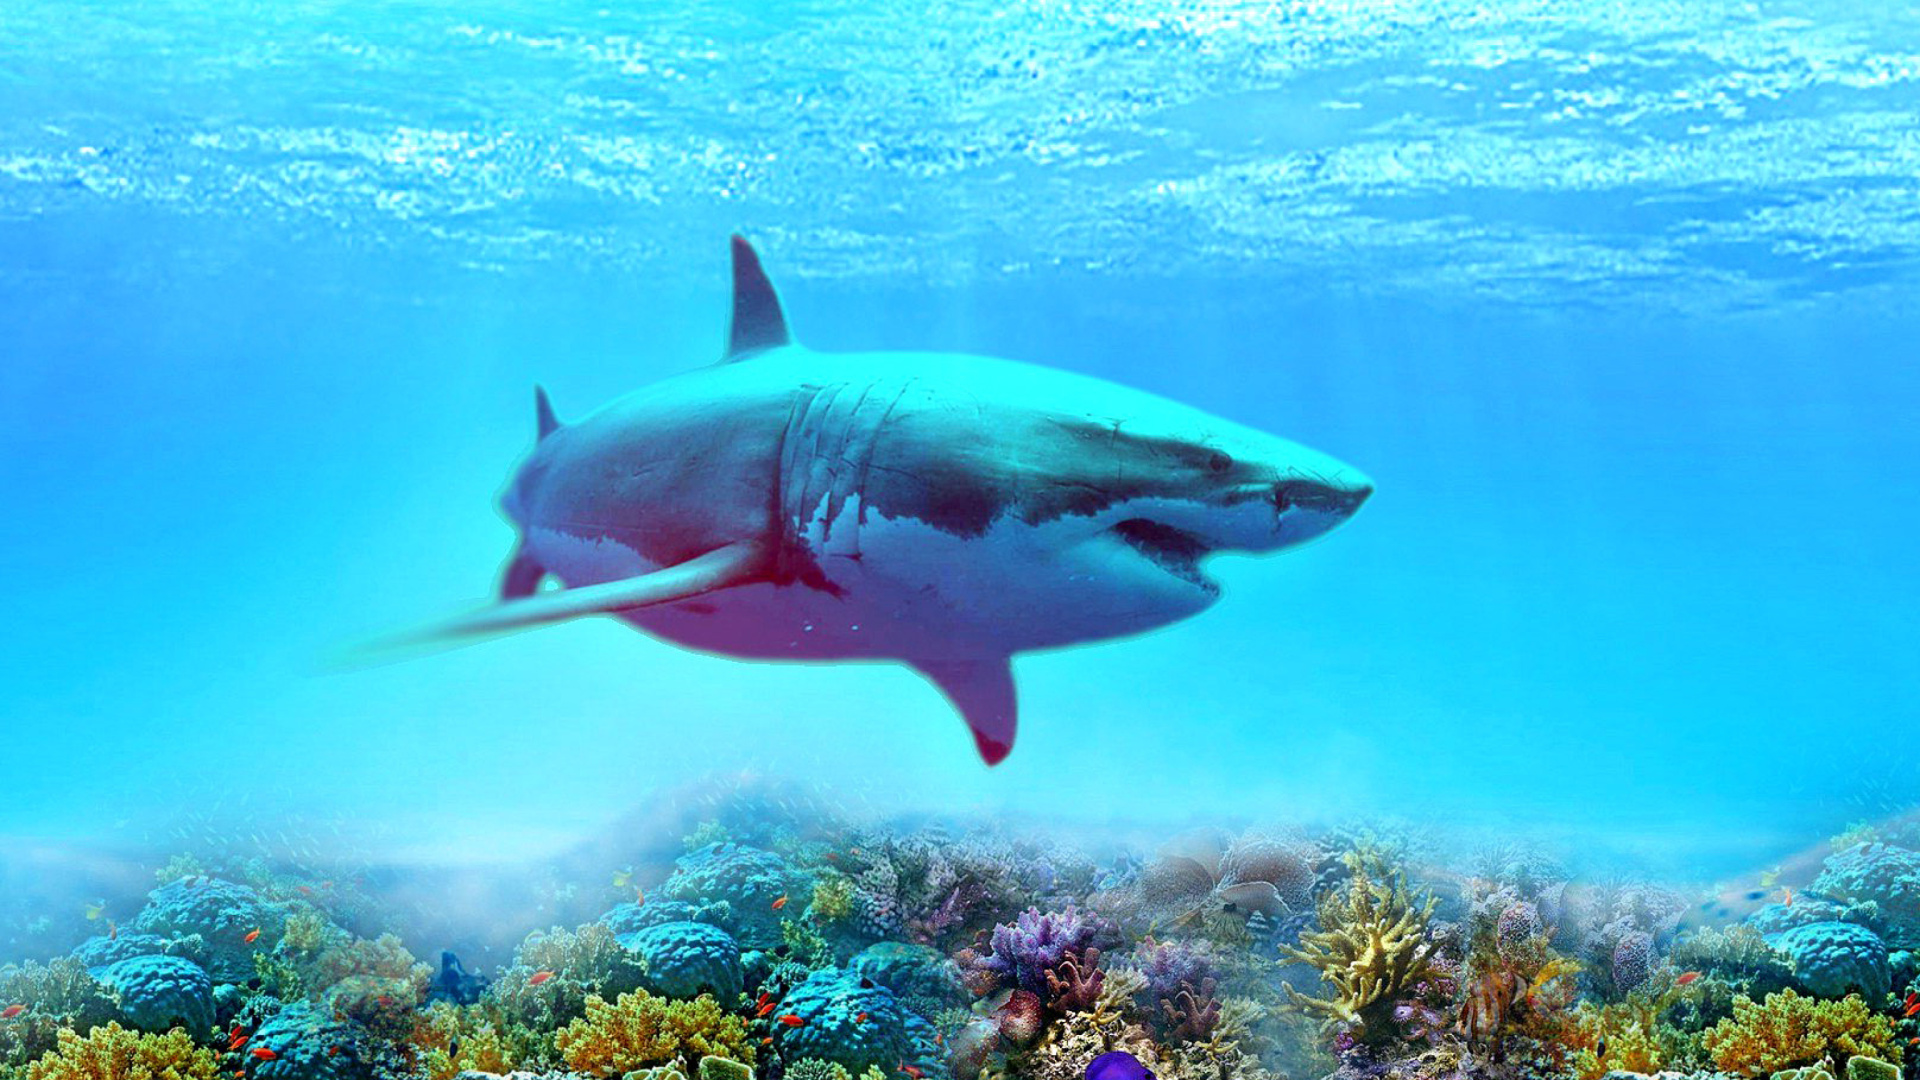 Great white shark Wallpaper for Desktop 1920x1080 Full HD.